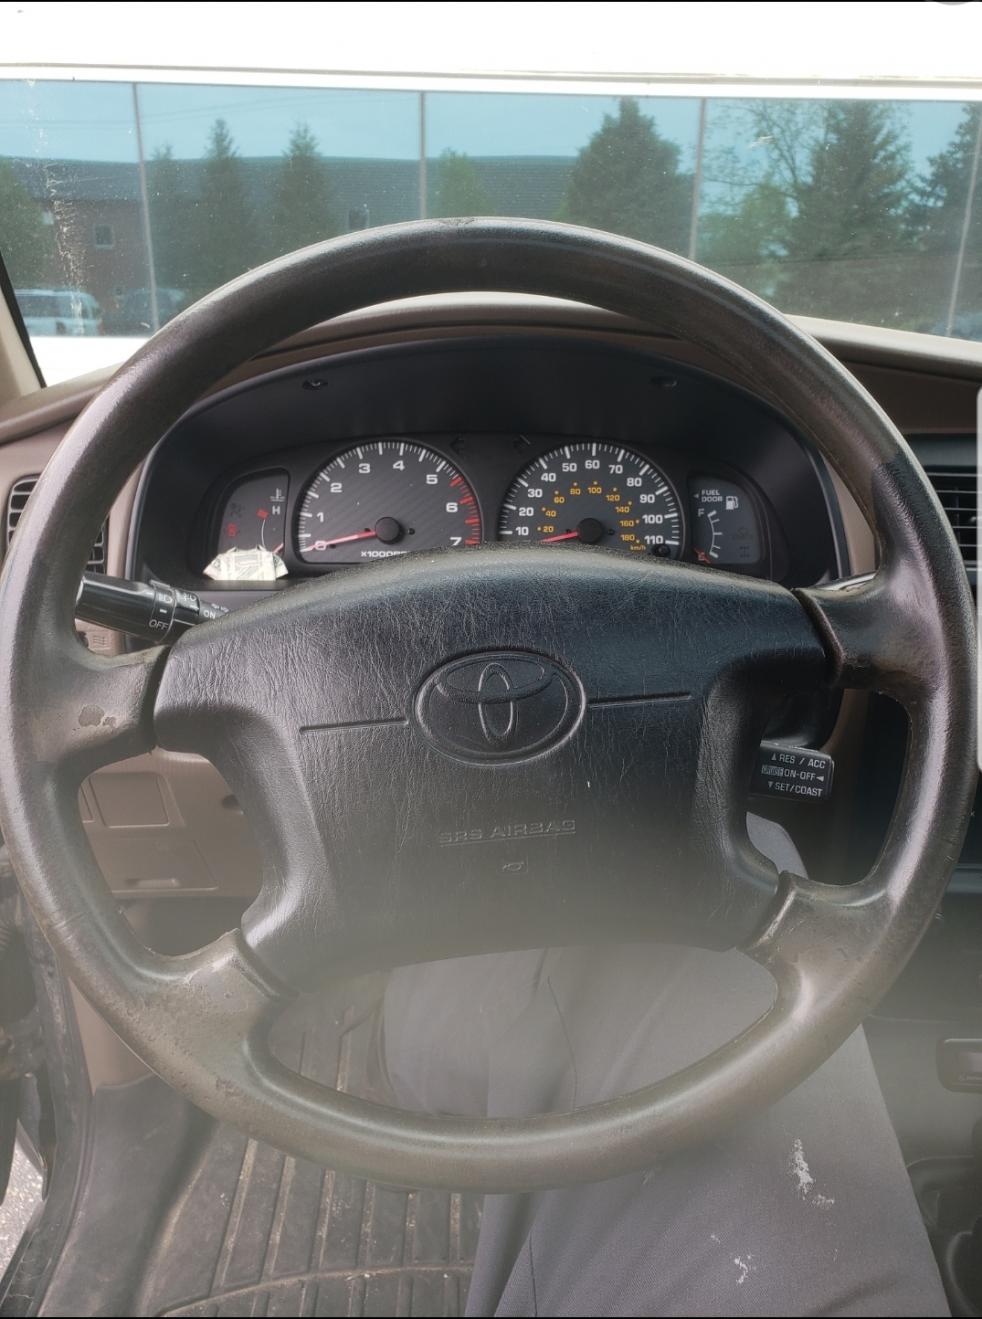 leather steering wheel-screenshot_20190521-114143_gallery-jpg